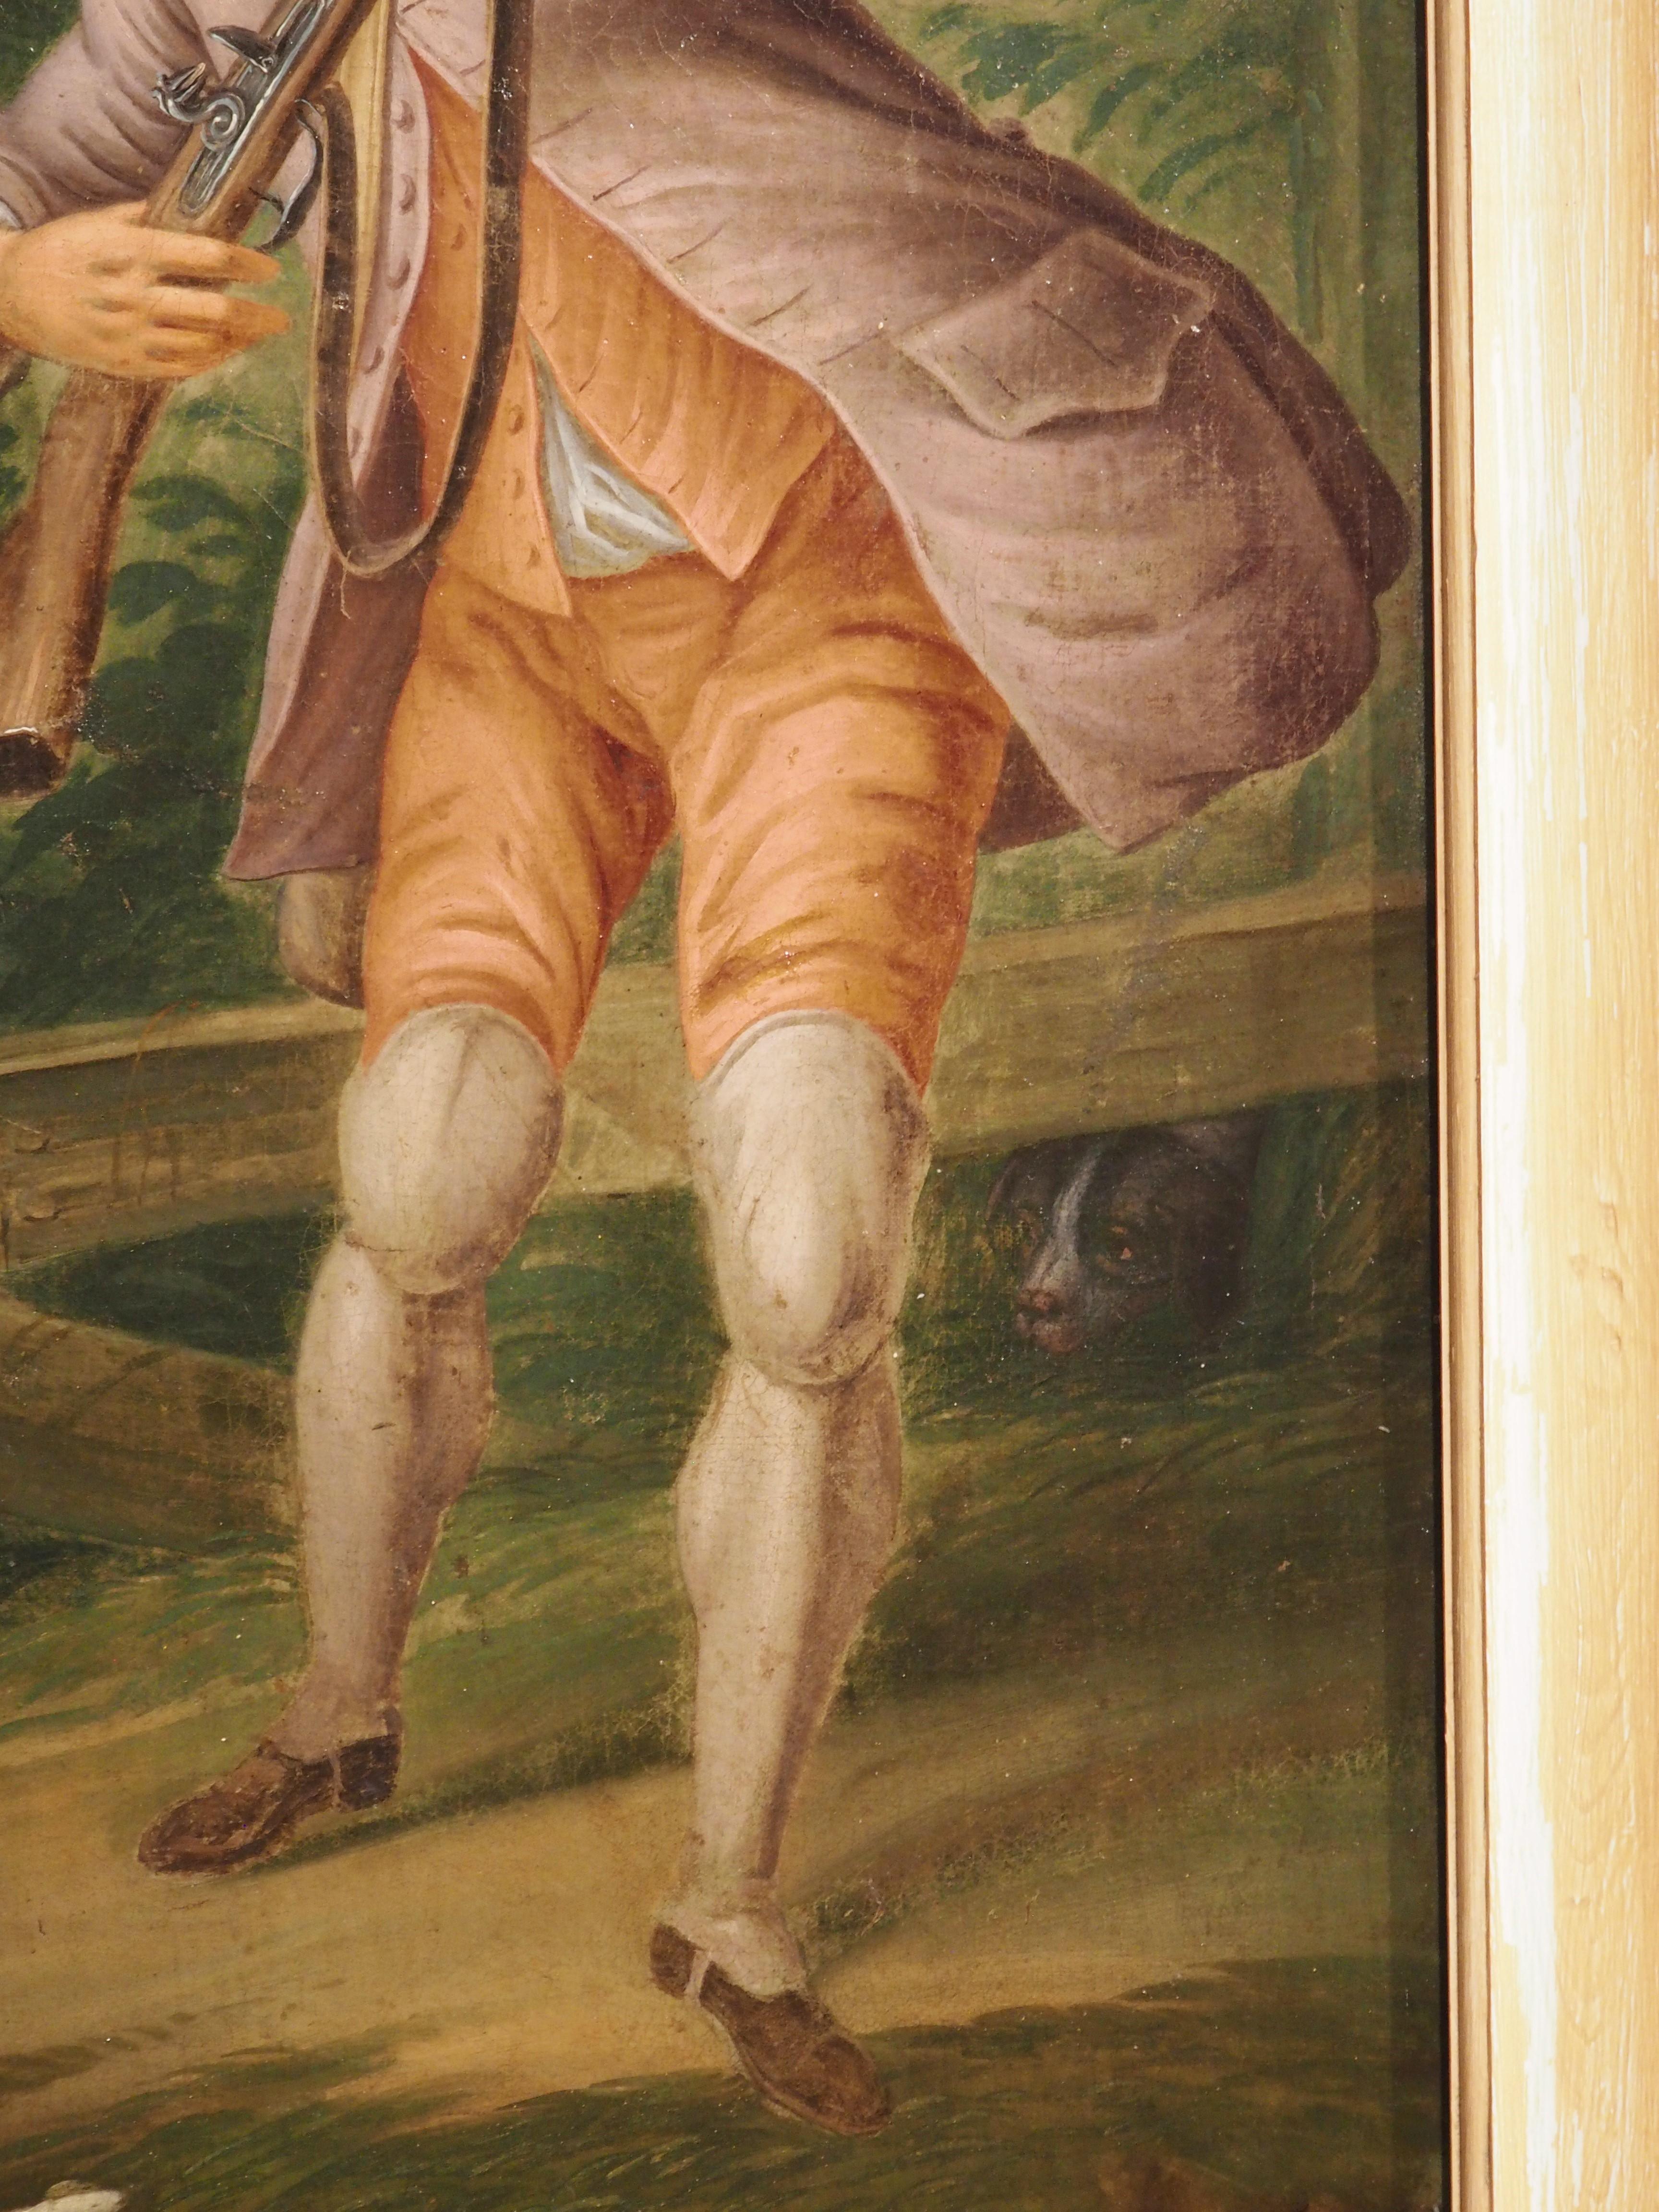 Cette grande peinture à l'huile sur toile (96 3/4 pouces de haut) représente un homme et son chien en train de chasser dans la campagne française. On peut voir un chasseur vêtu de rouge et feu avec un pardessus mauve suivre un retriever blanc avec